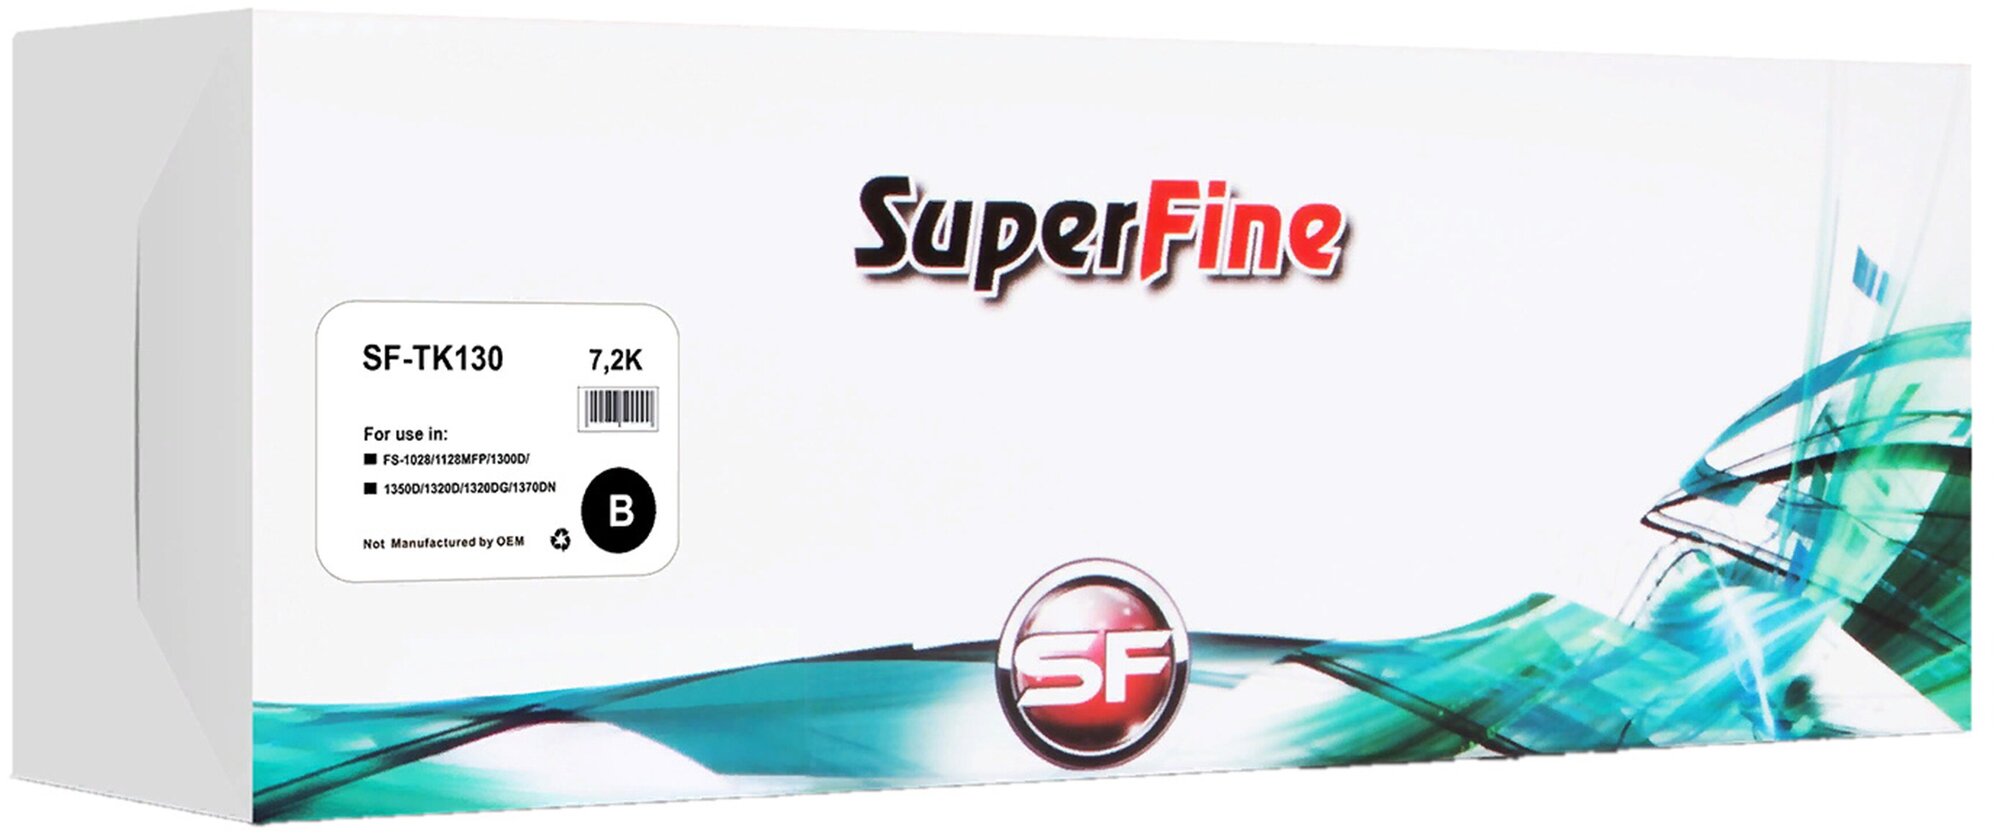 SuperFine Картридж Kyocera TK130 FS-1028/1128MFP/1300D/1350D/1320D/1320DG/1370DN 7.2K SuperFine